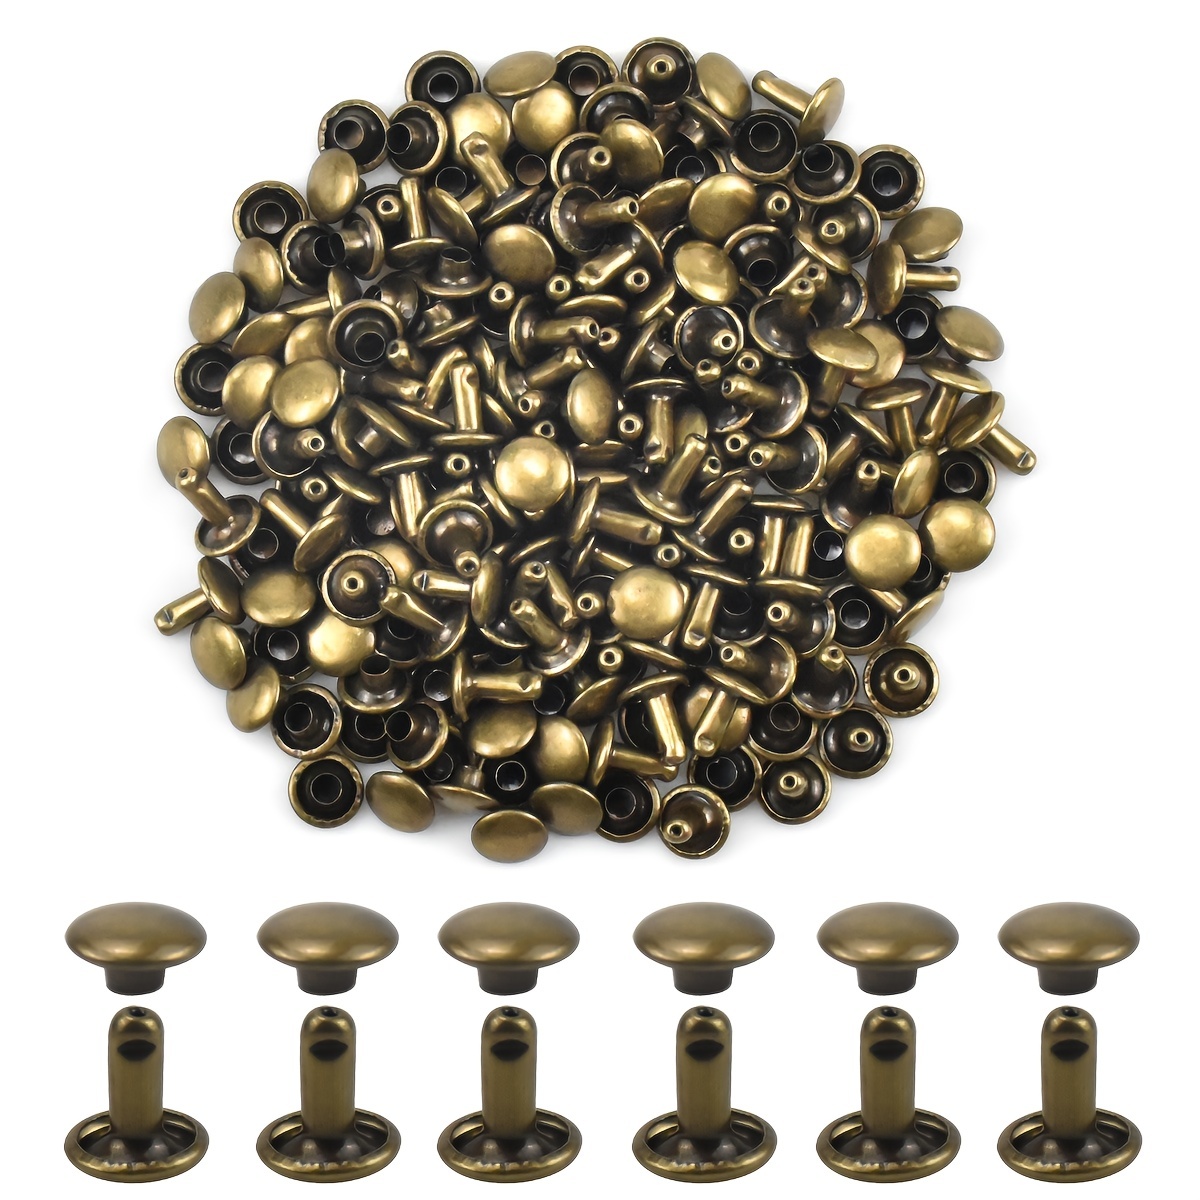 Metal Brass Doble tapa de cabeza Prensa remaches botones para